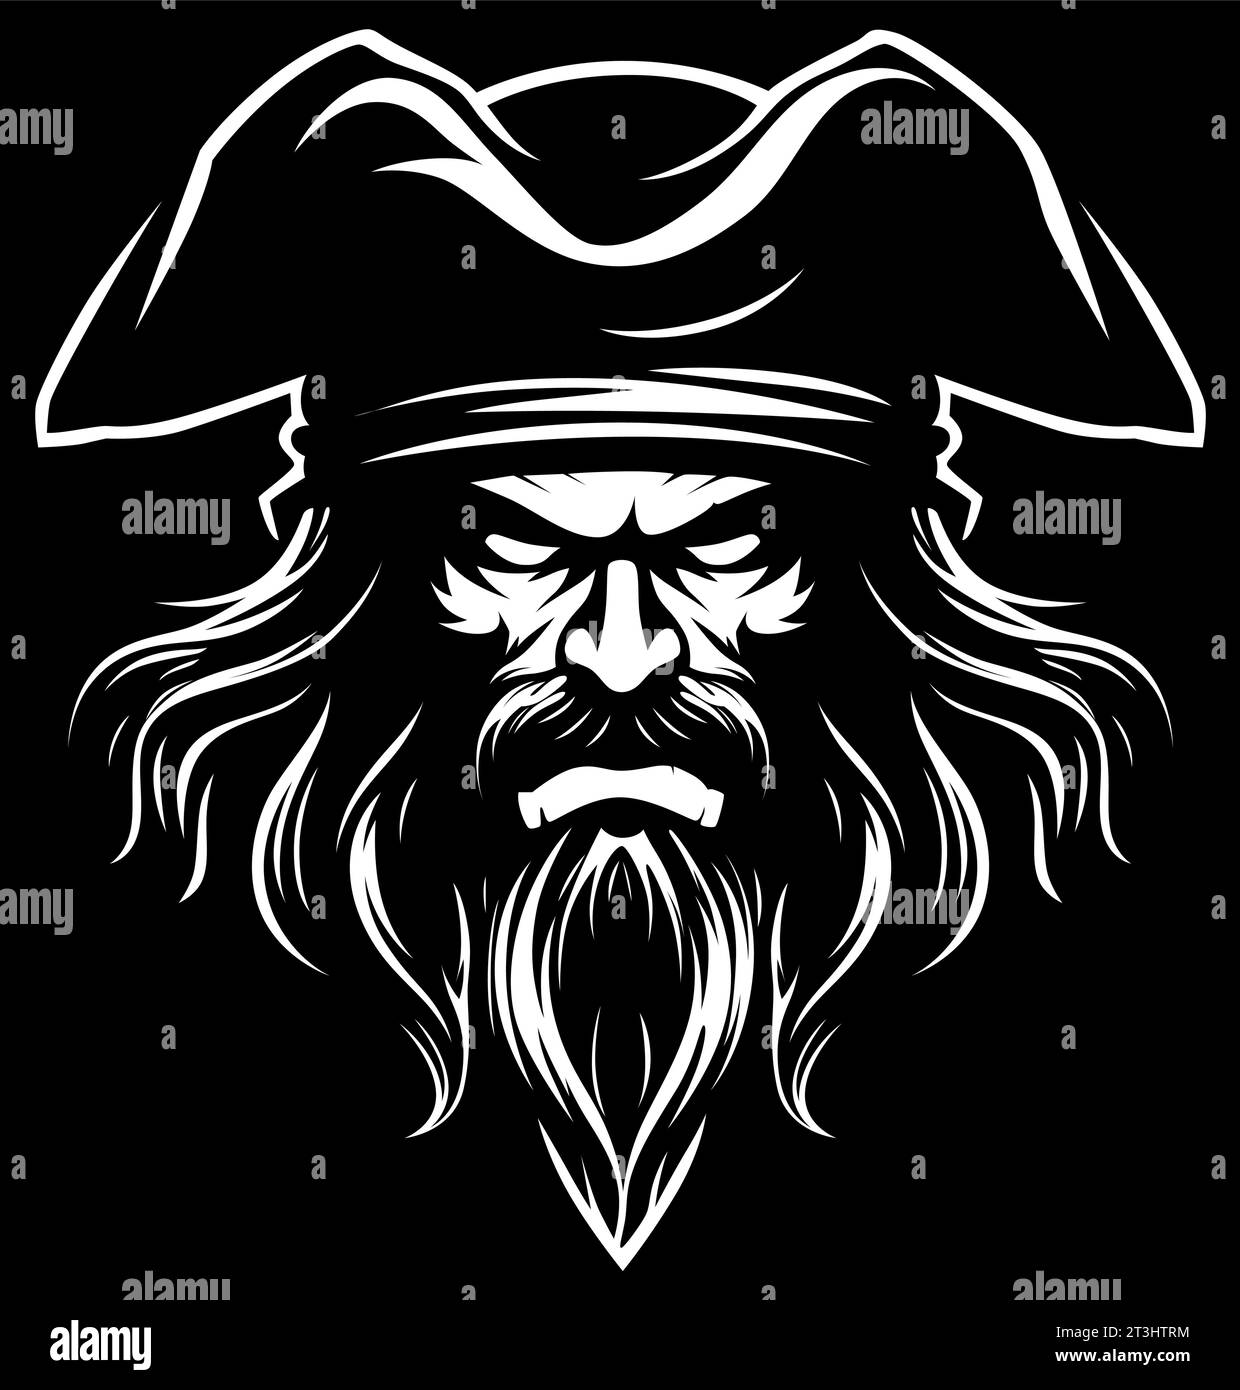 Einfarbige Darstellung eines wilden Piraten mit markantem Bart, intensiven Augen und Tricornhut, der vor schwarzem Hintergrund Bedrohung und Entschlossenheit ausstrahlt. Stock Vektor